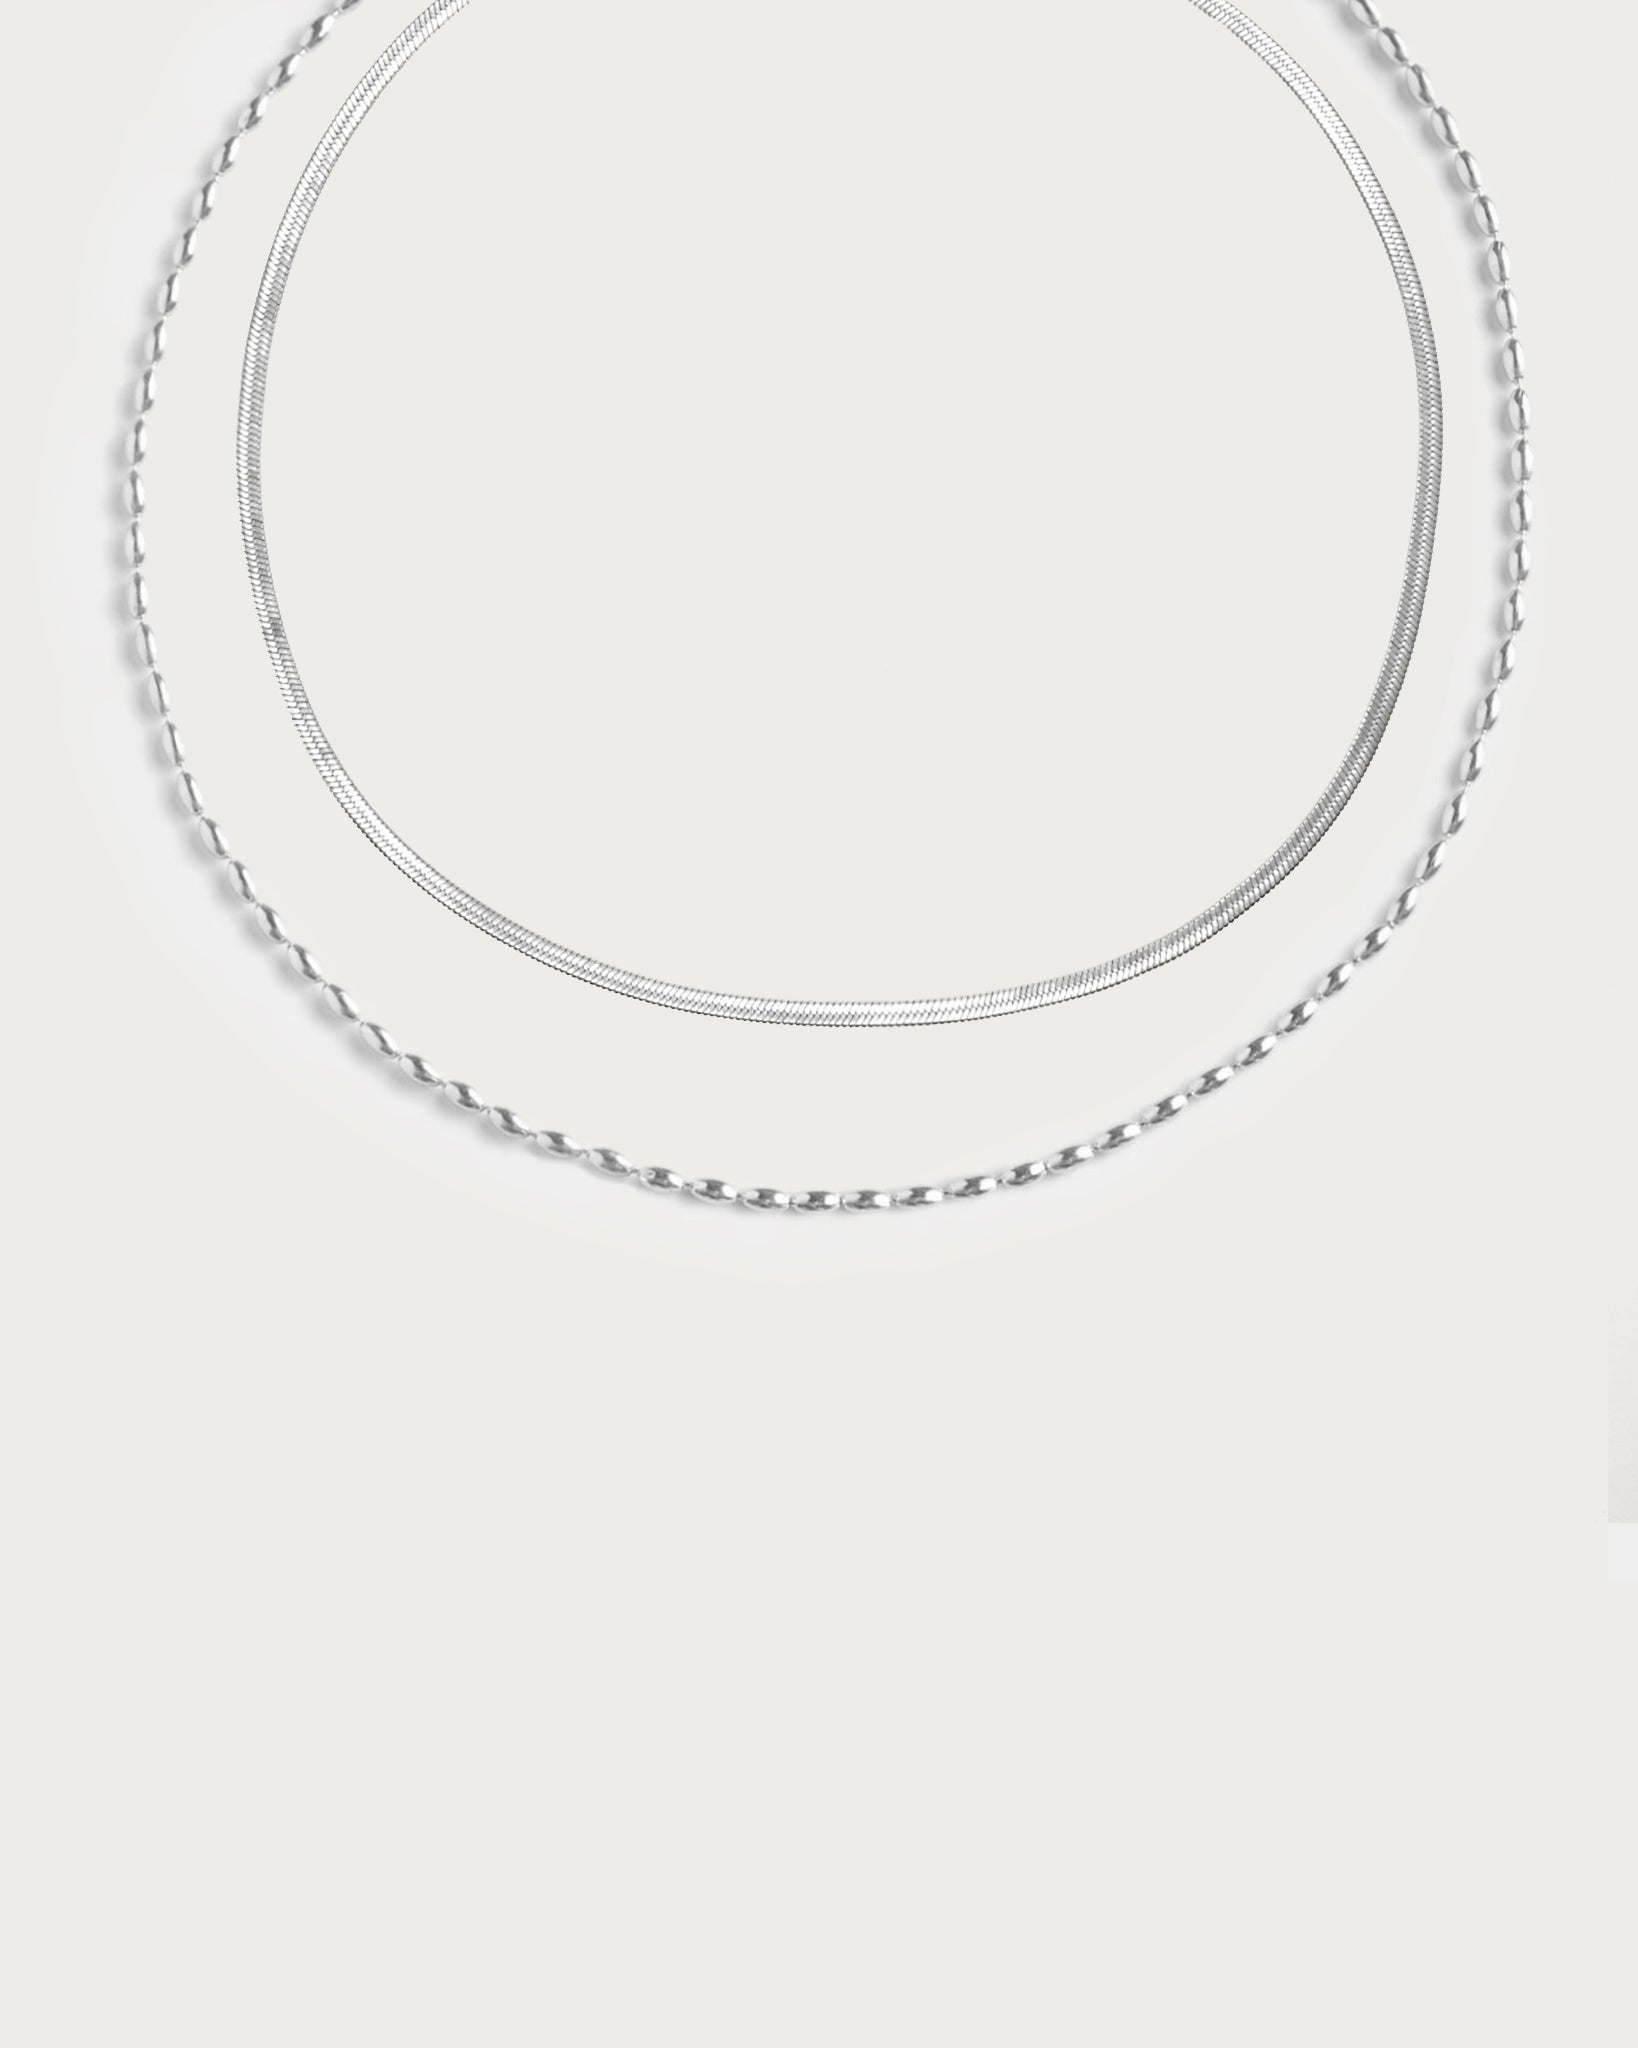 Silver Cadena de la Cintura Collar Set